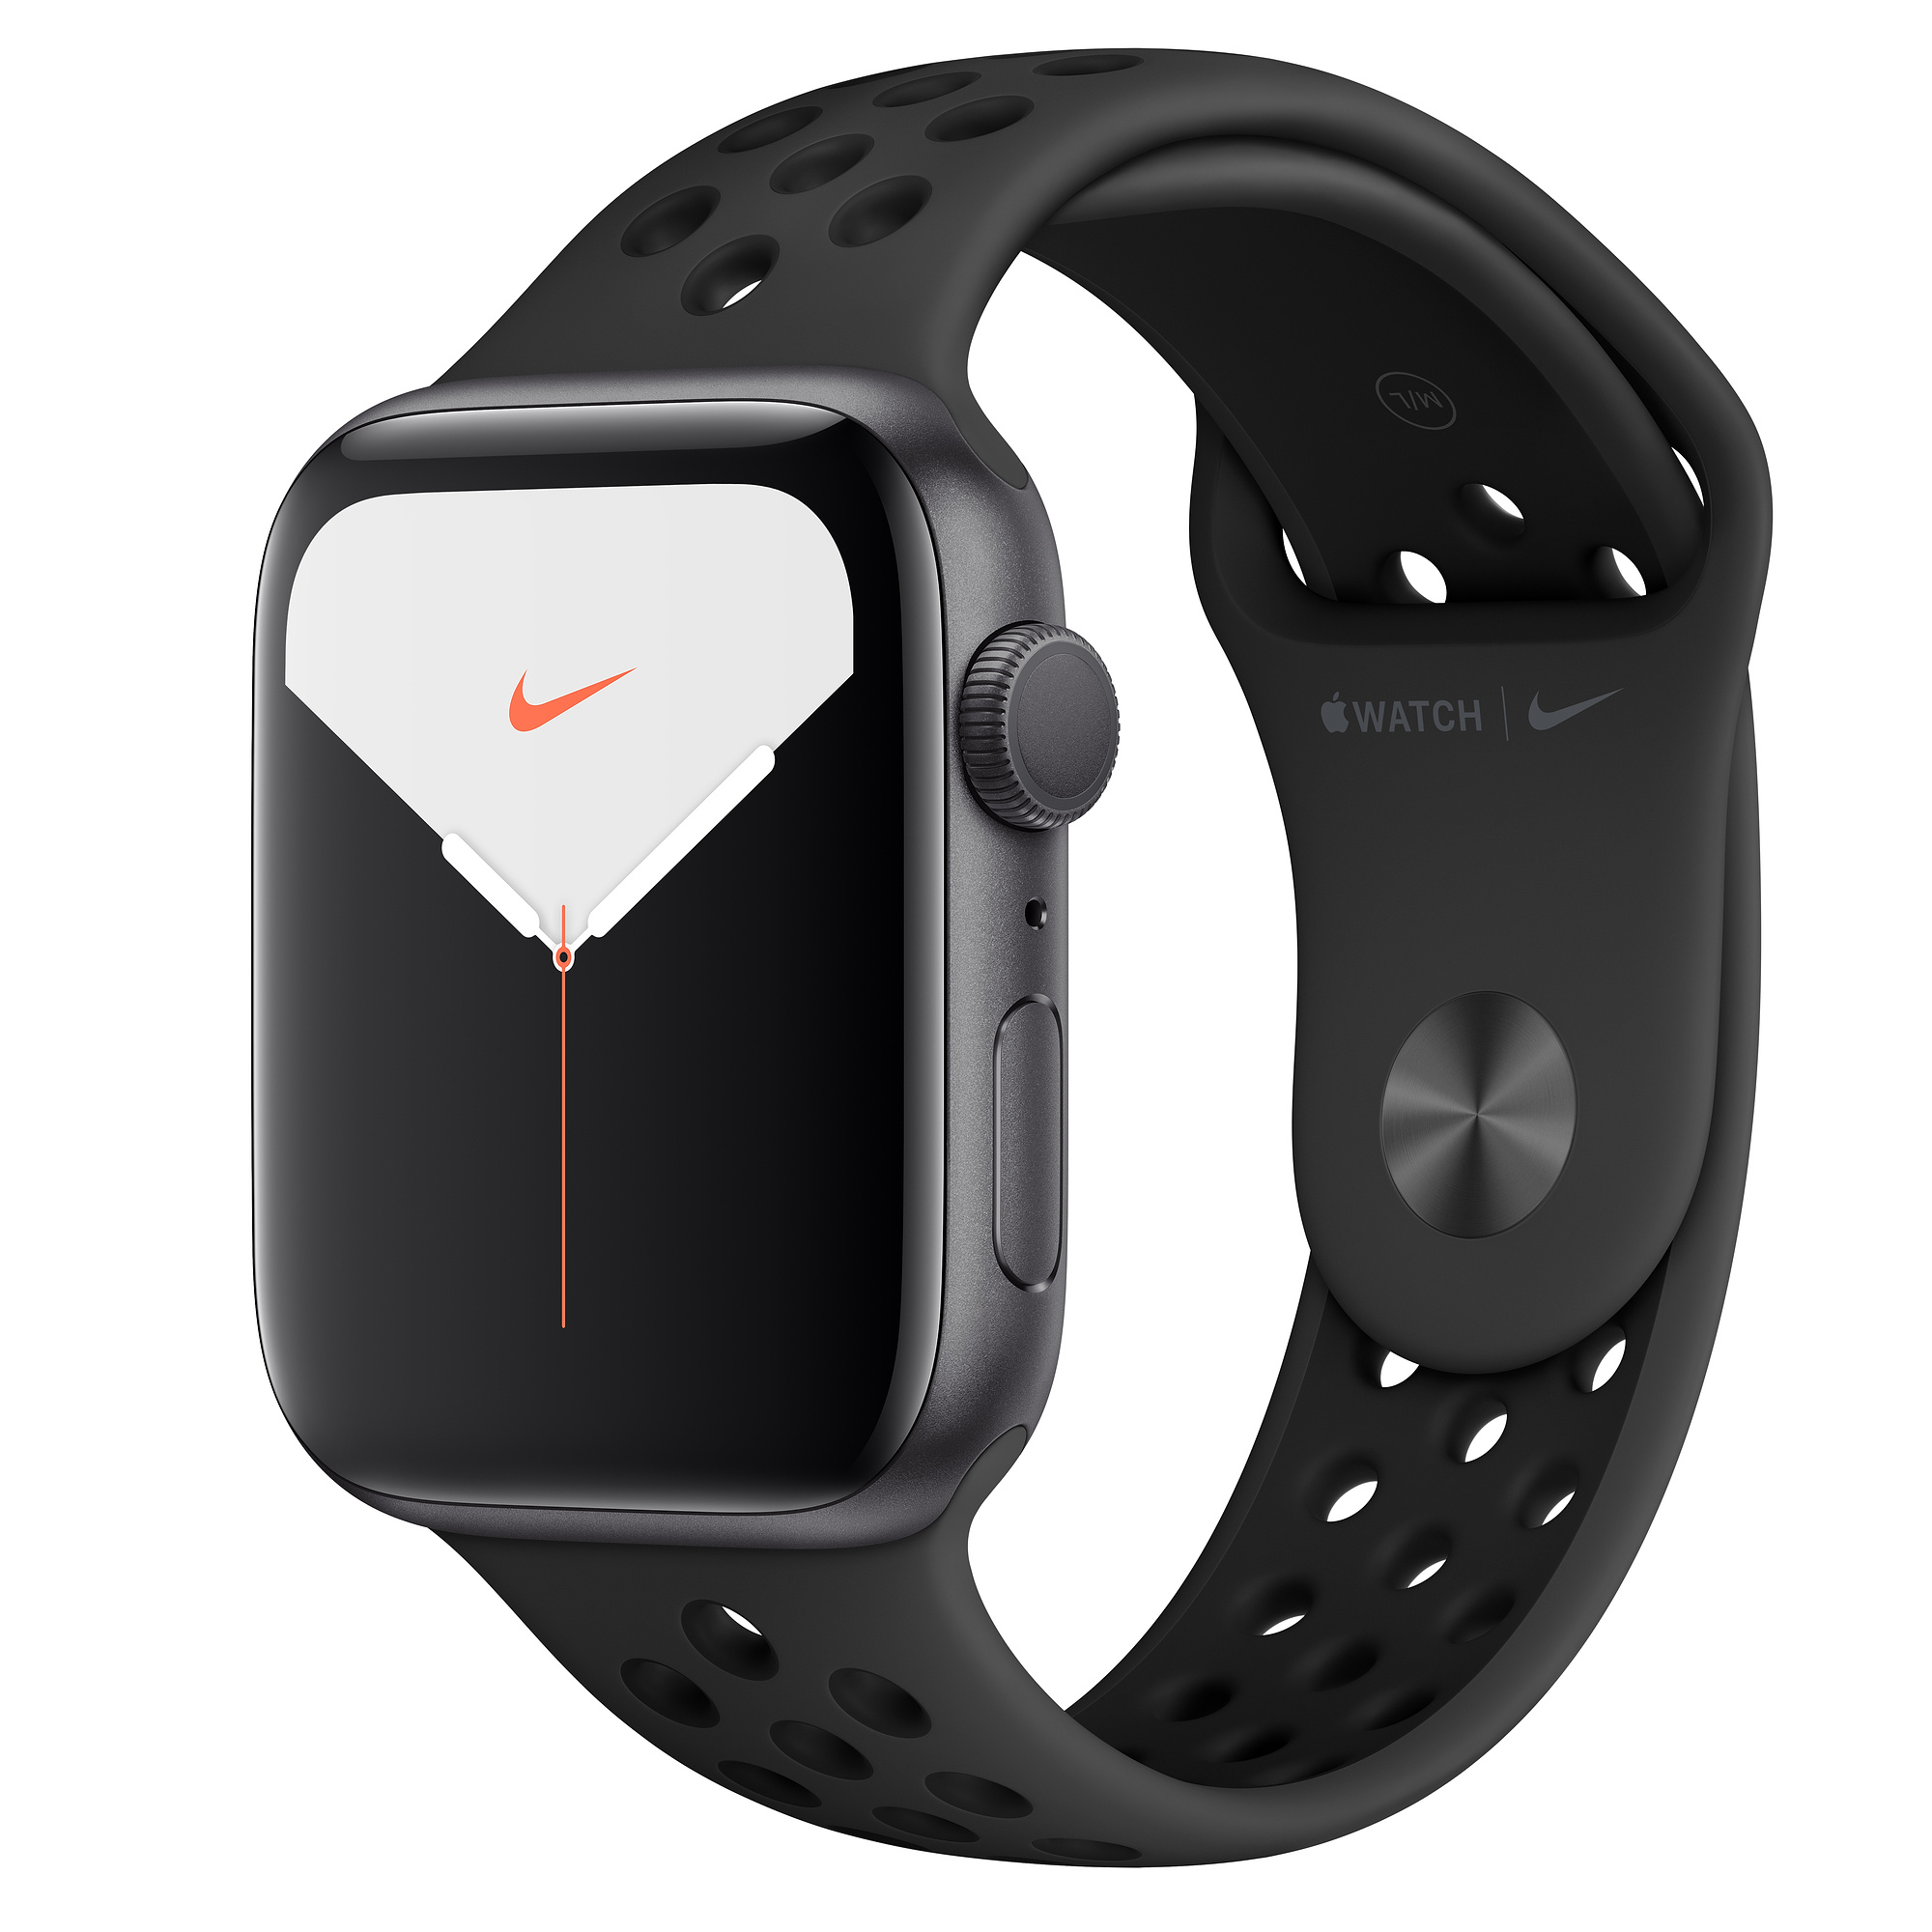 Buy Apple Watch Series 5 Nike Edition At Best Price In Kenya